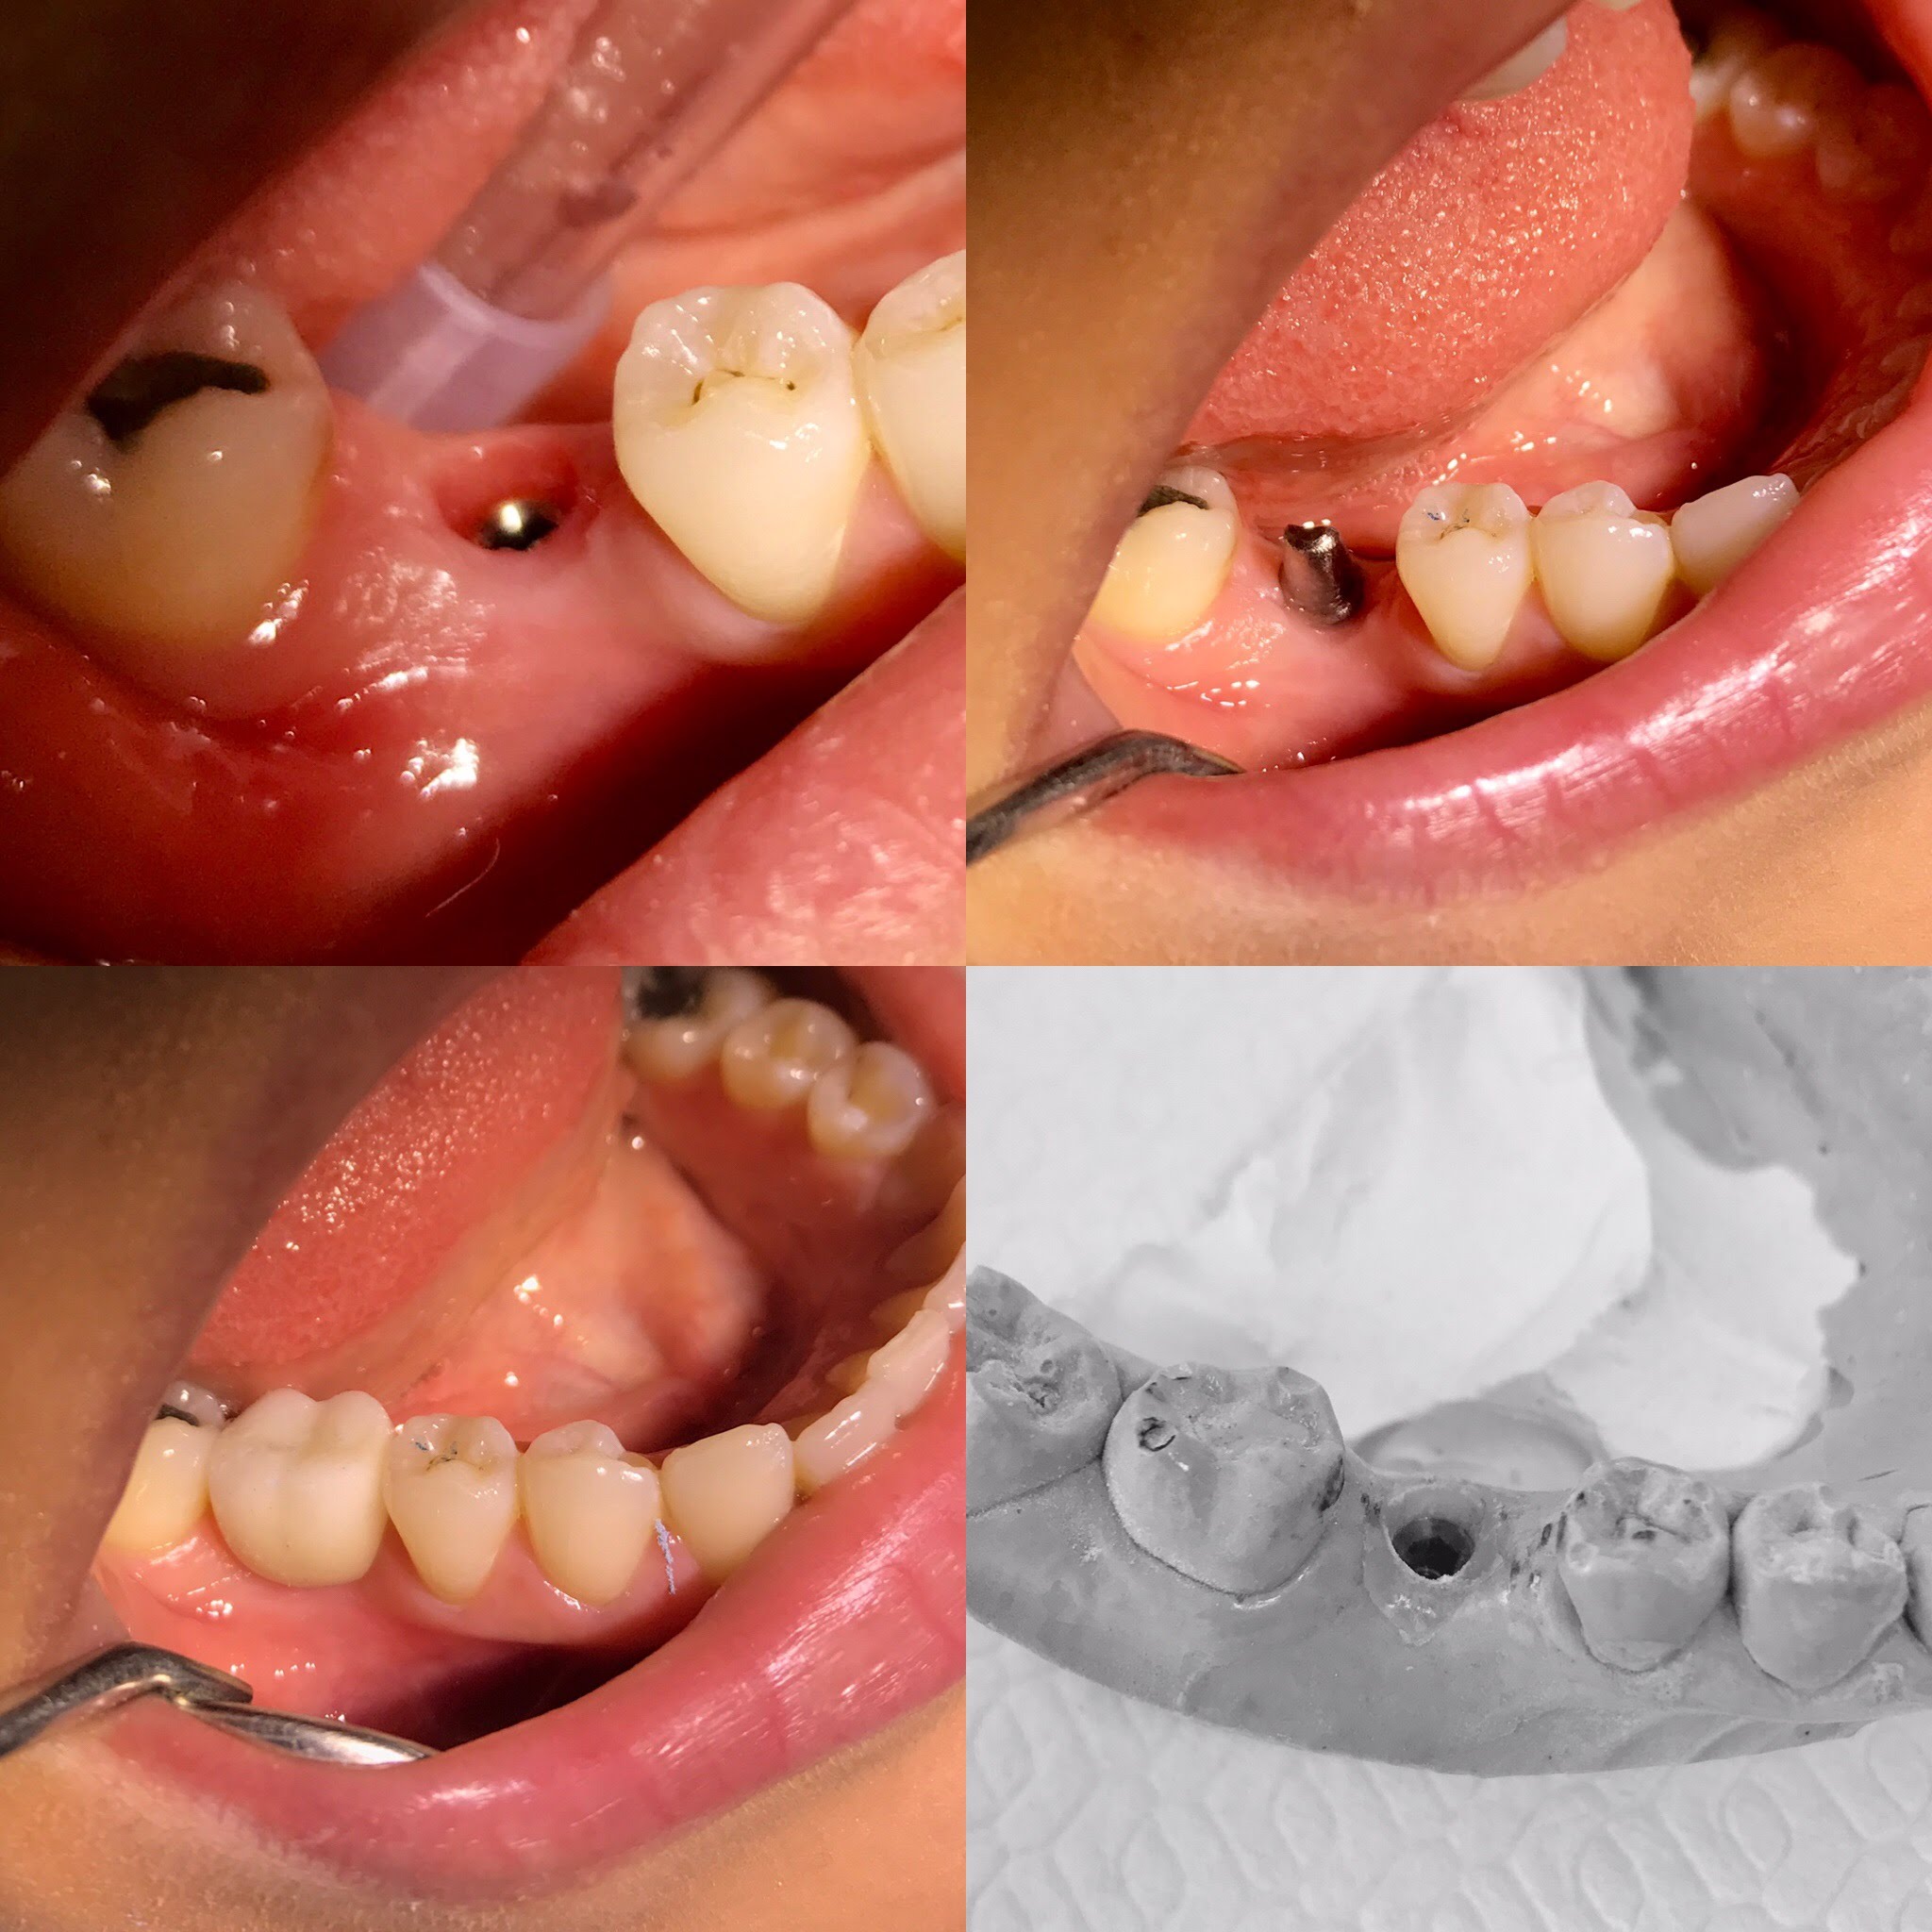 مراحل زراعة الأسنان